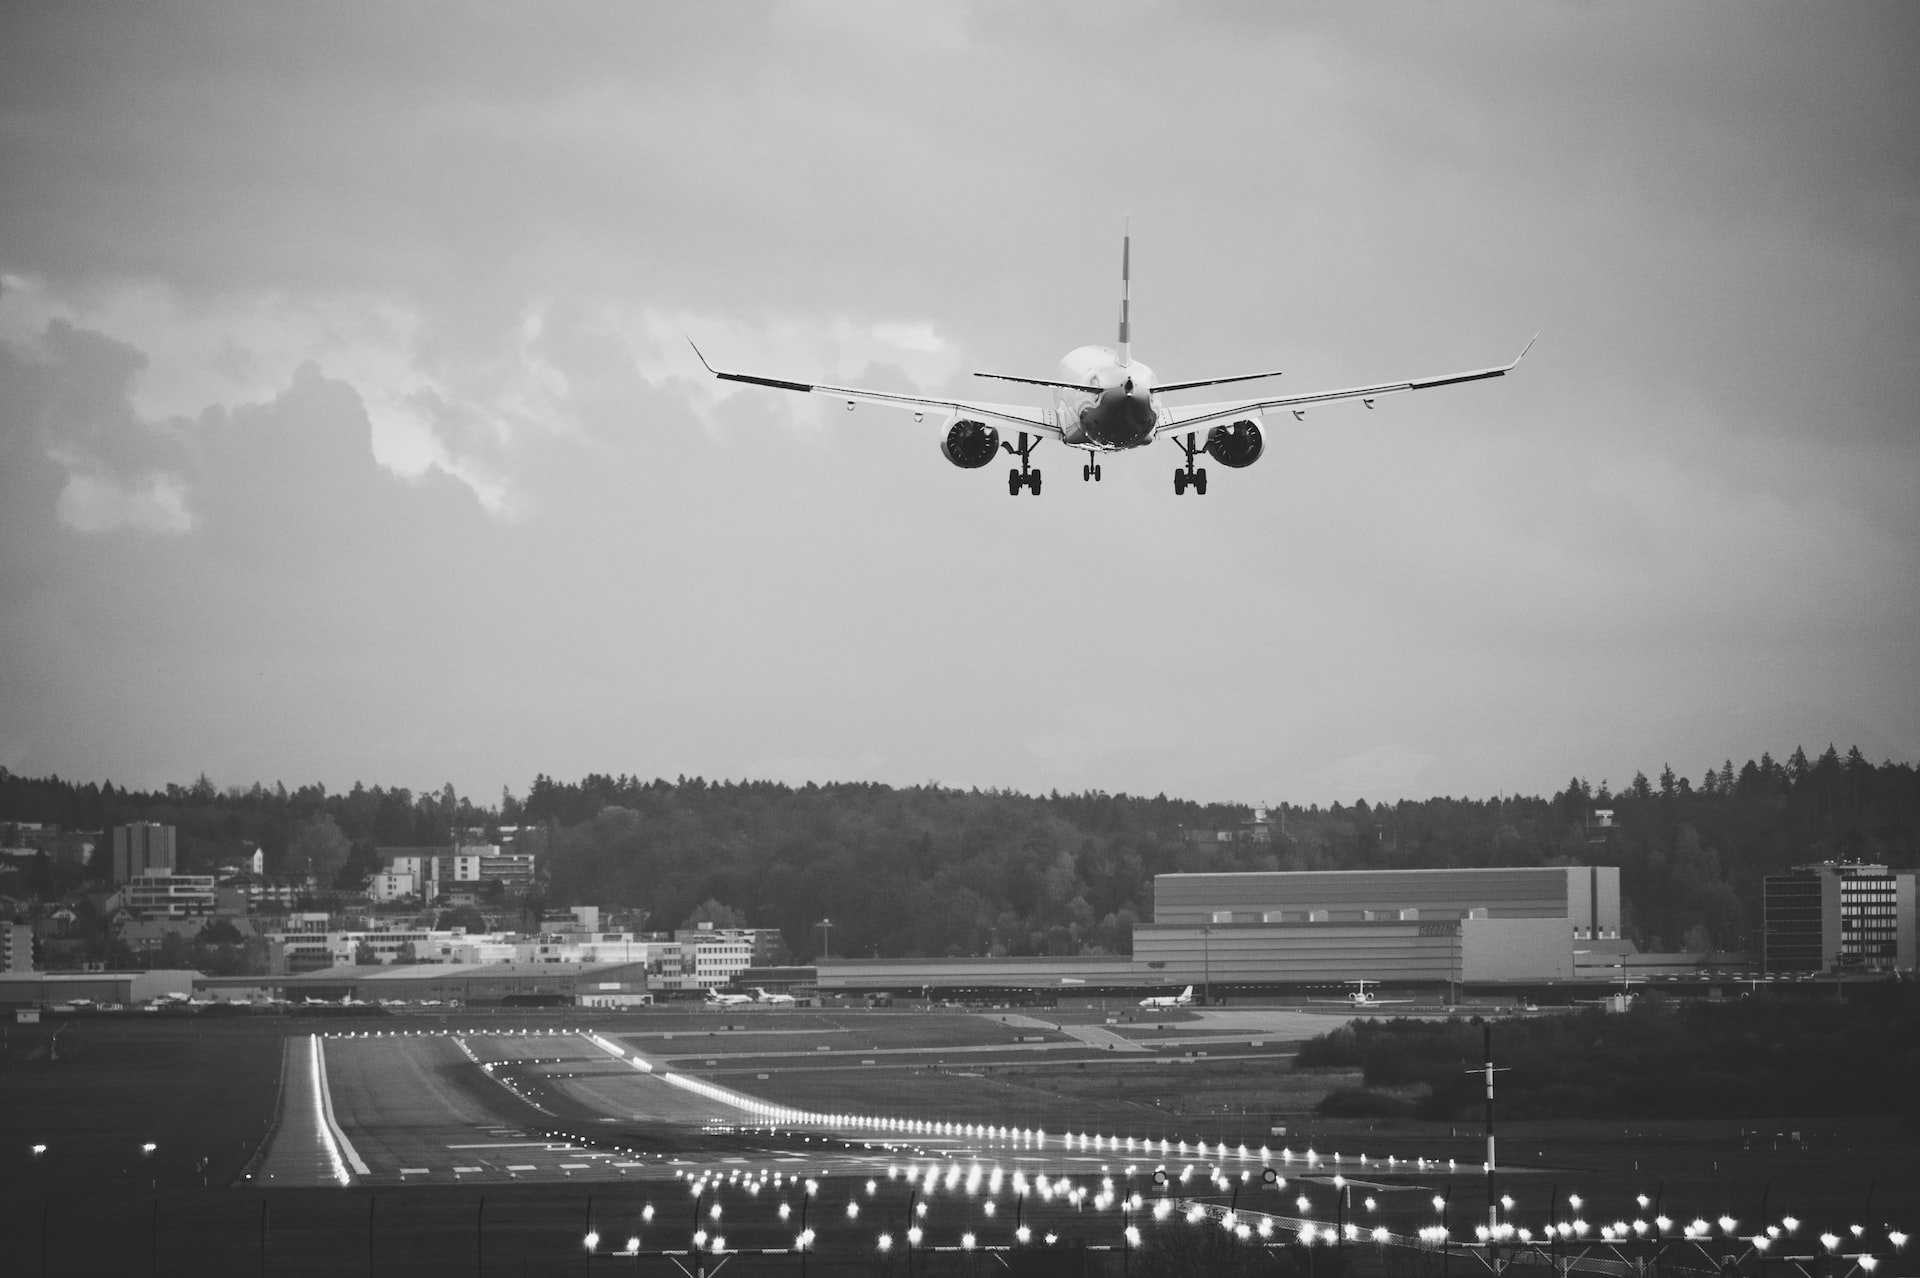 An aircraft landing on an illuminated runway.